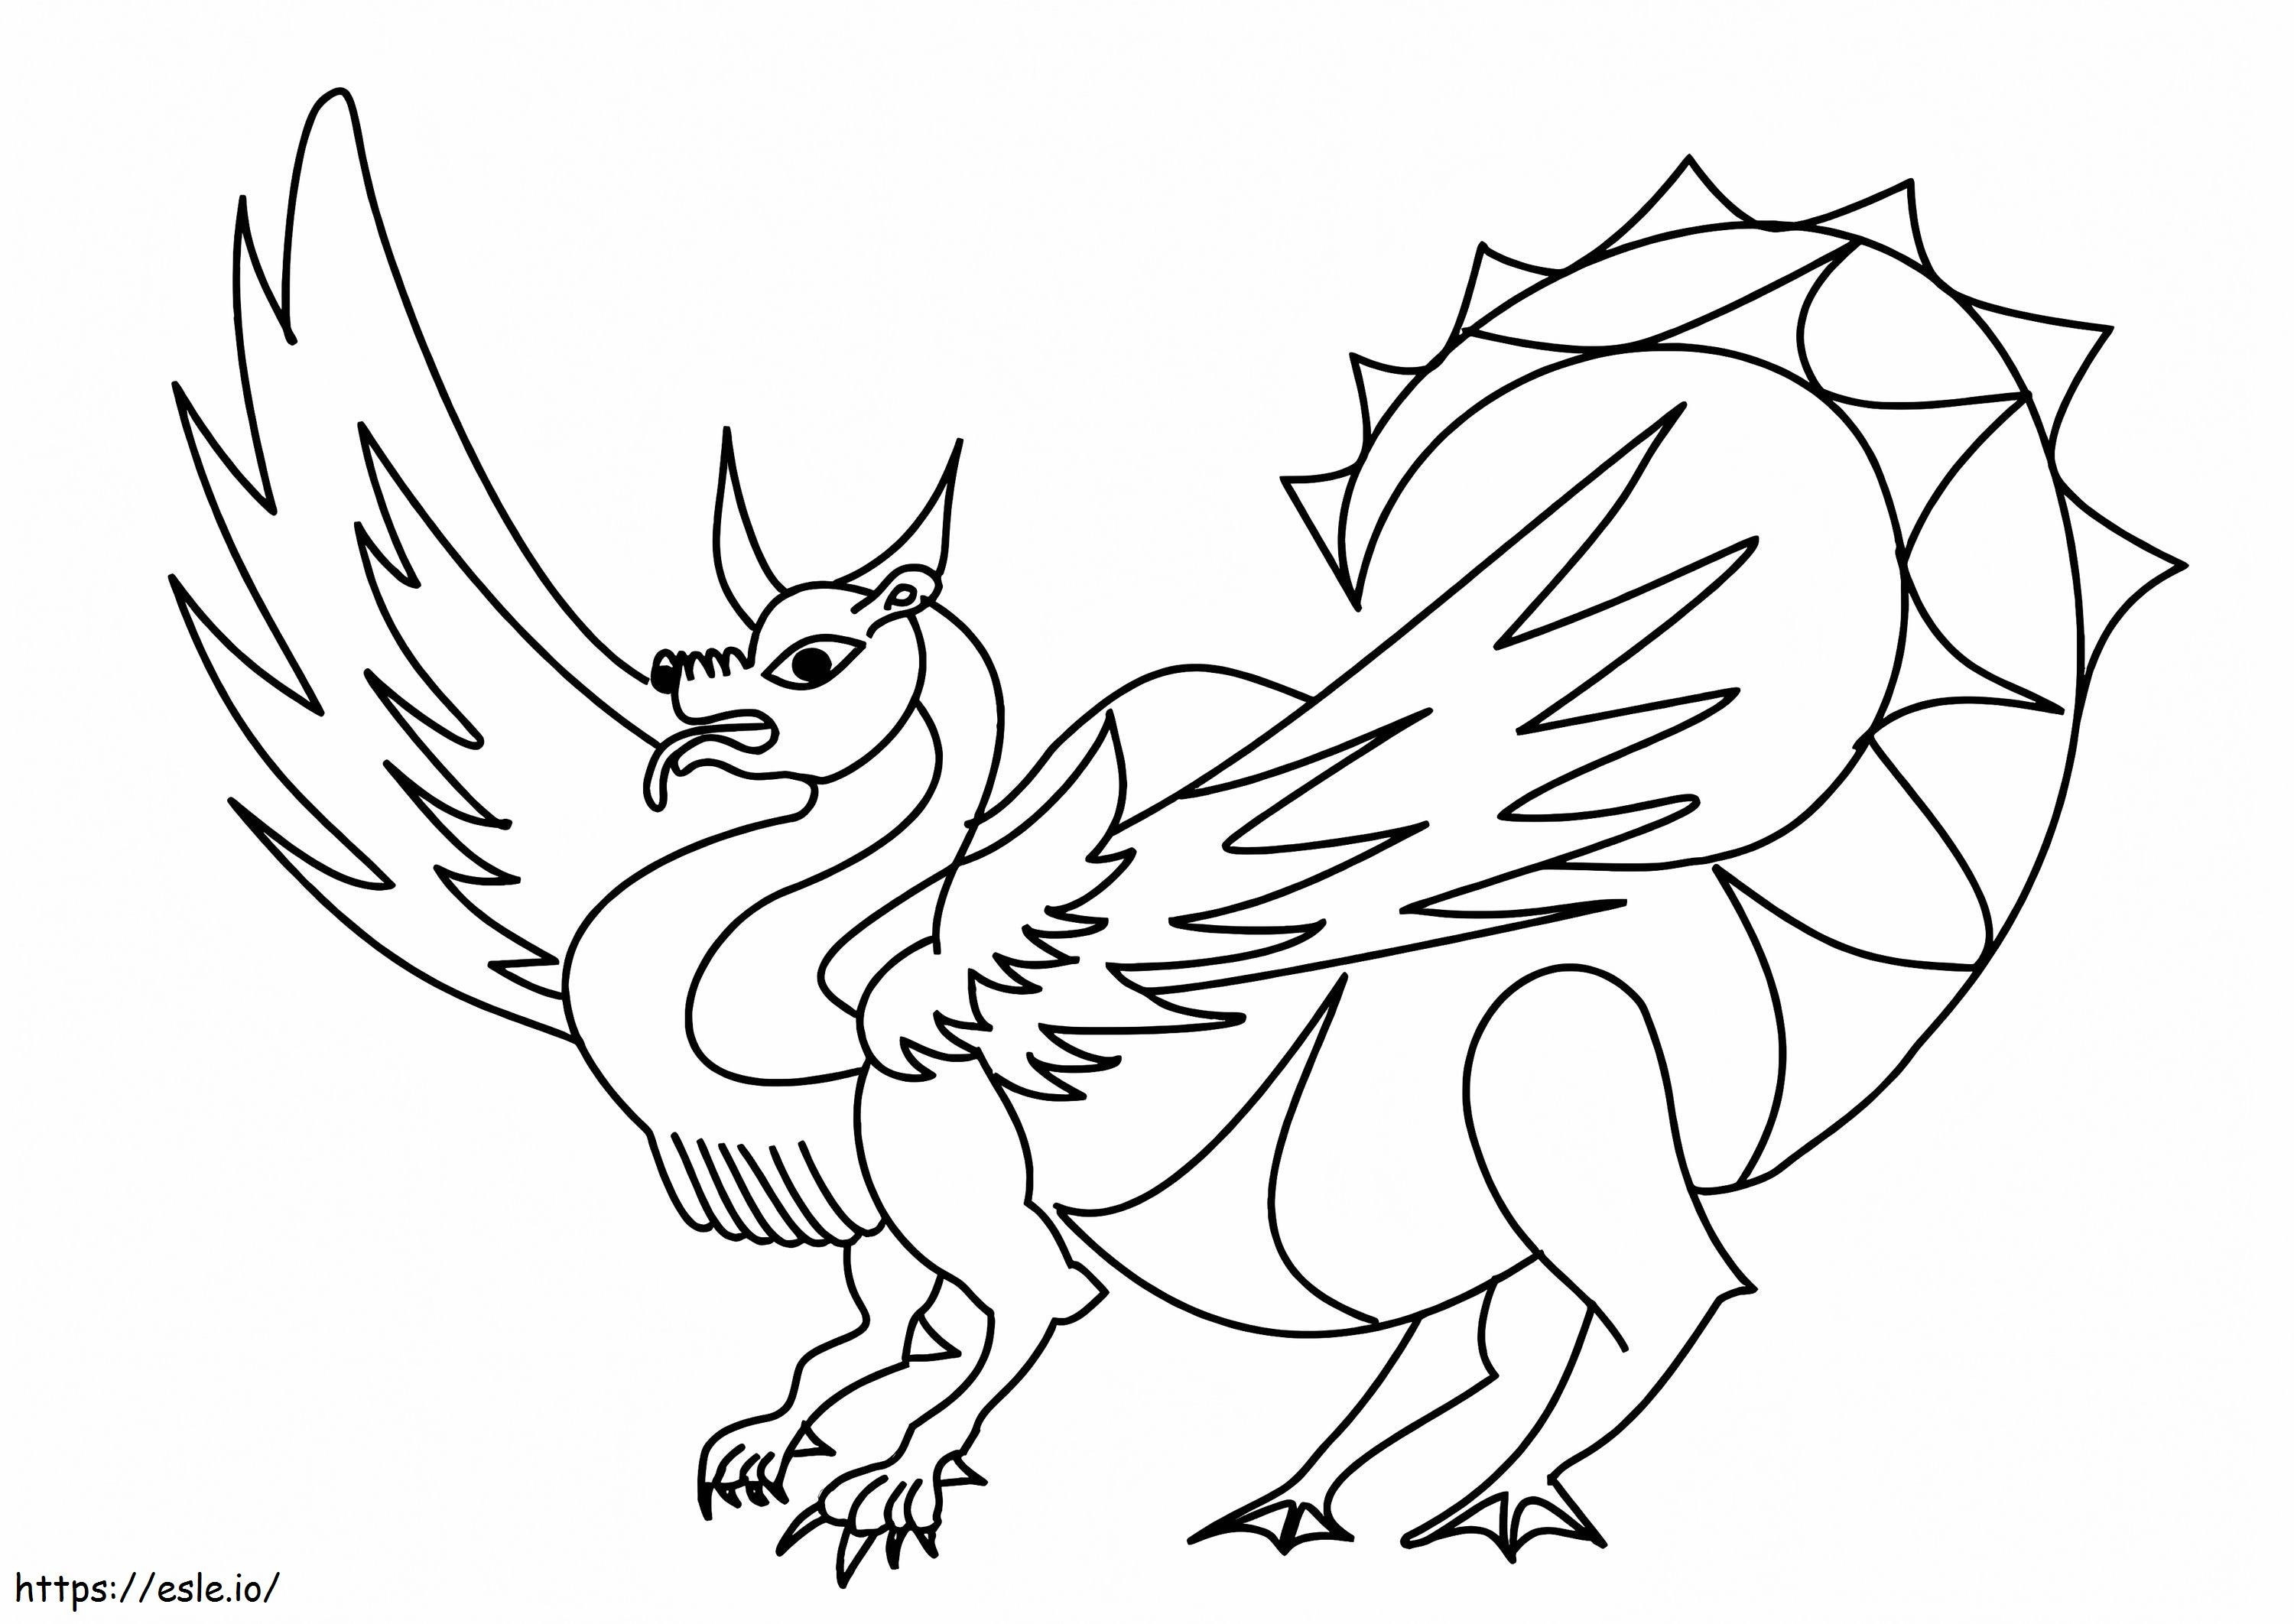 Dragon Fox coloring page